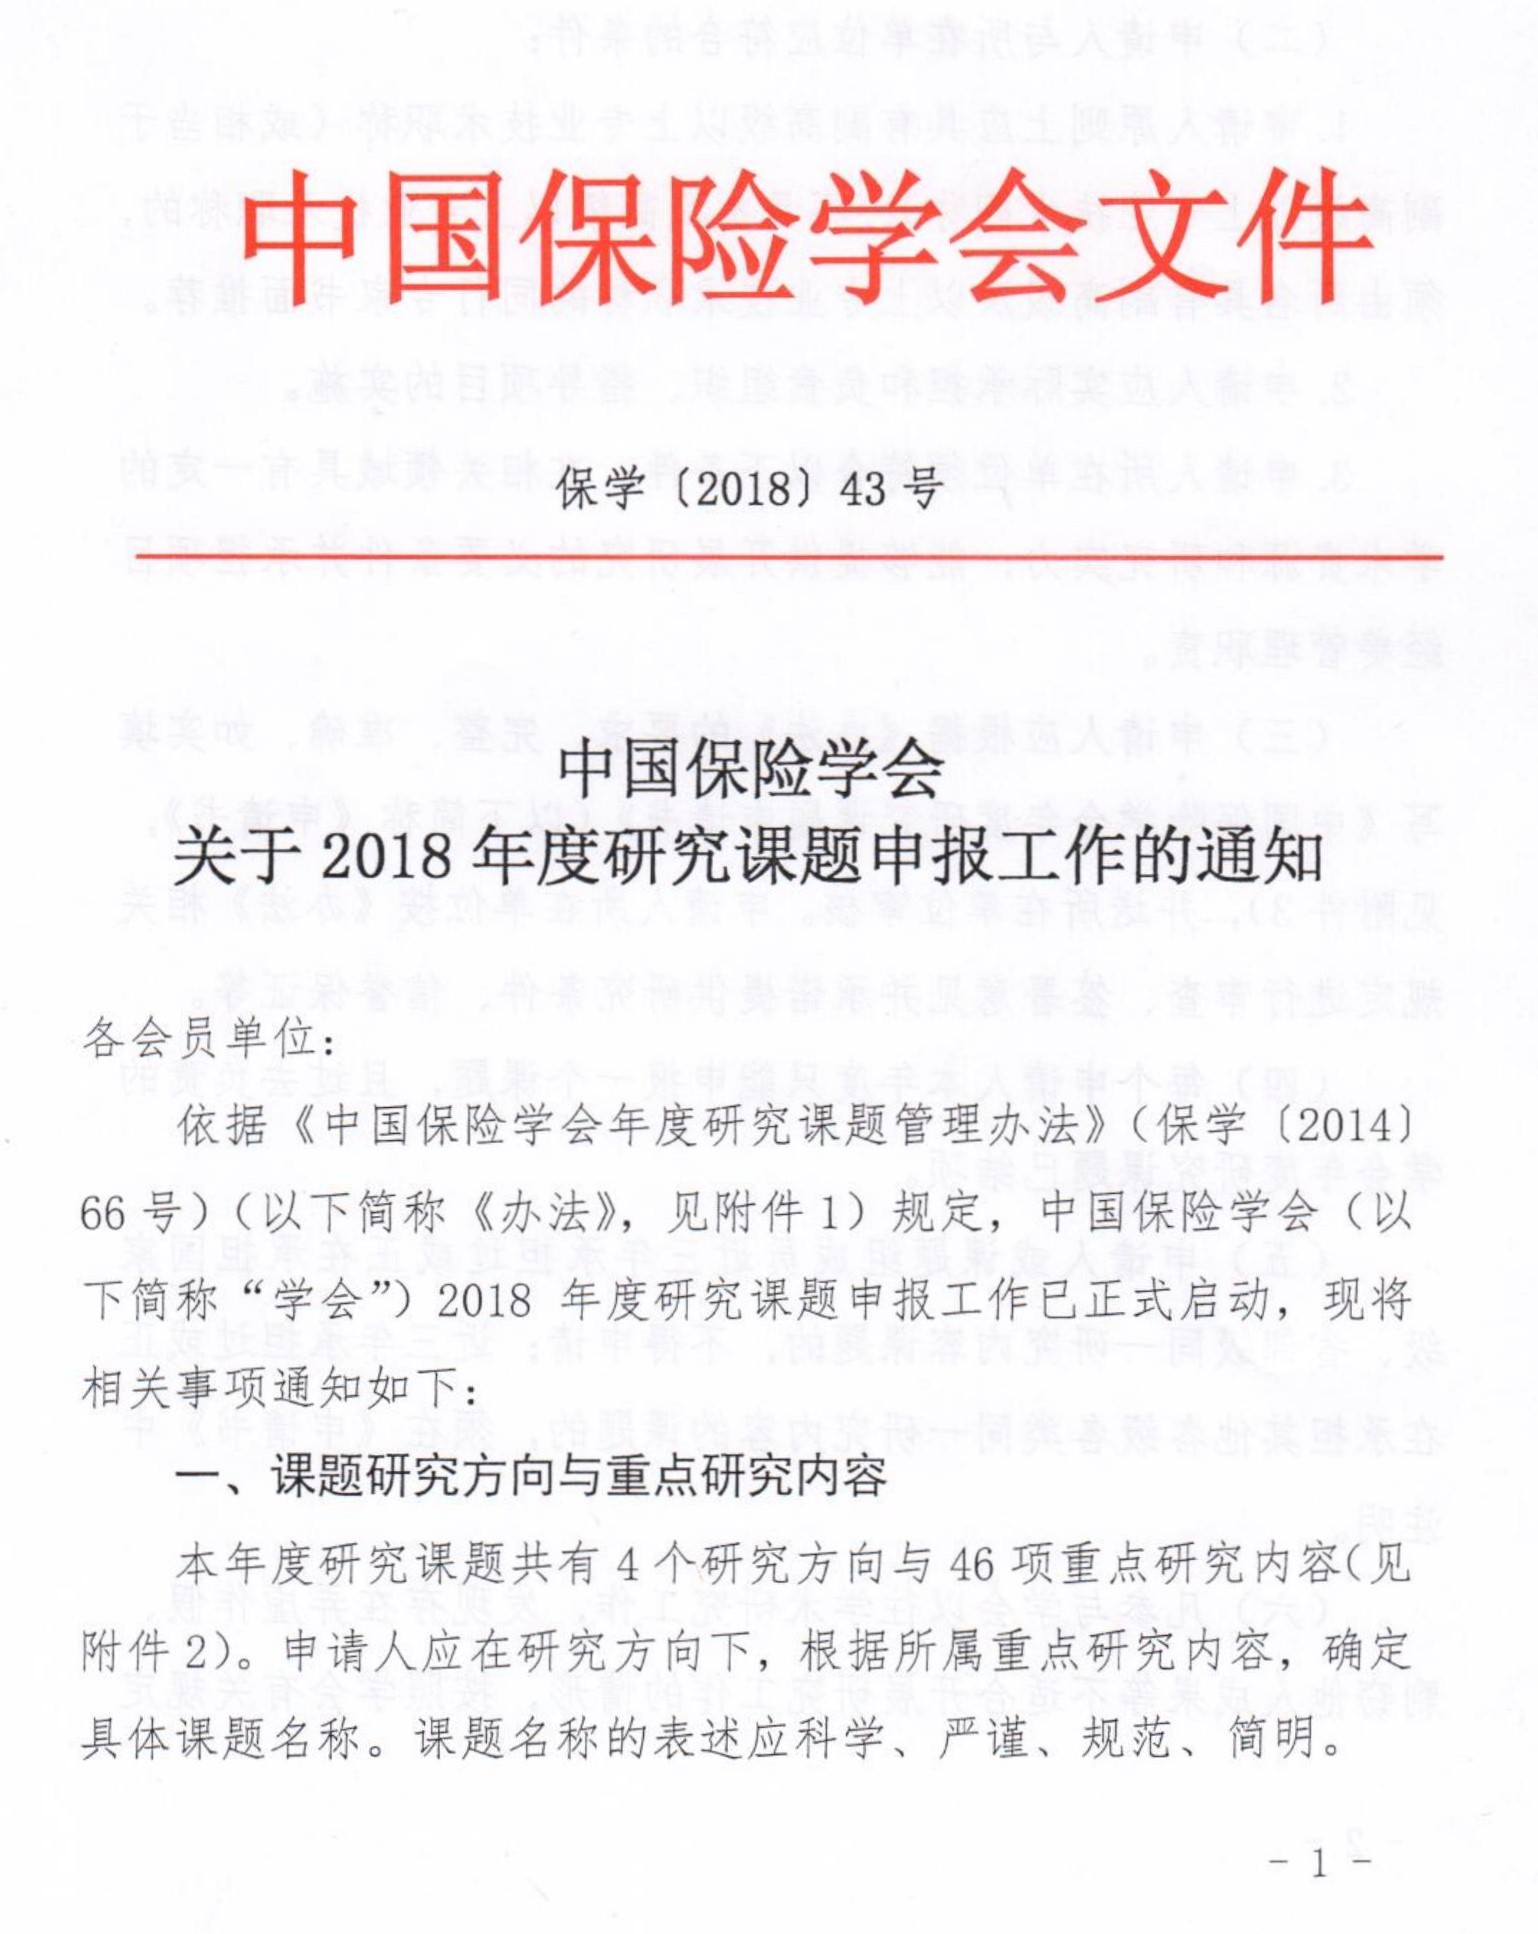 中国保险学会关于2018年度研究课题申报工作的通知_1.jpg